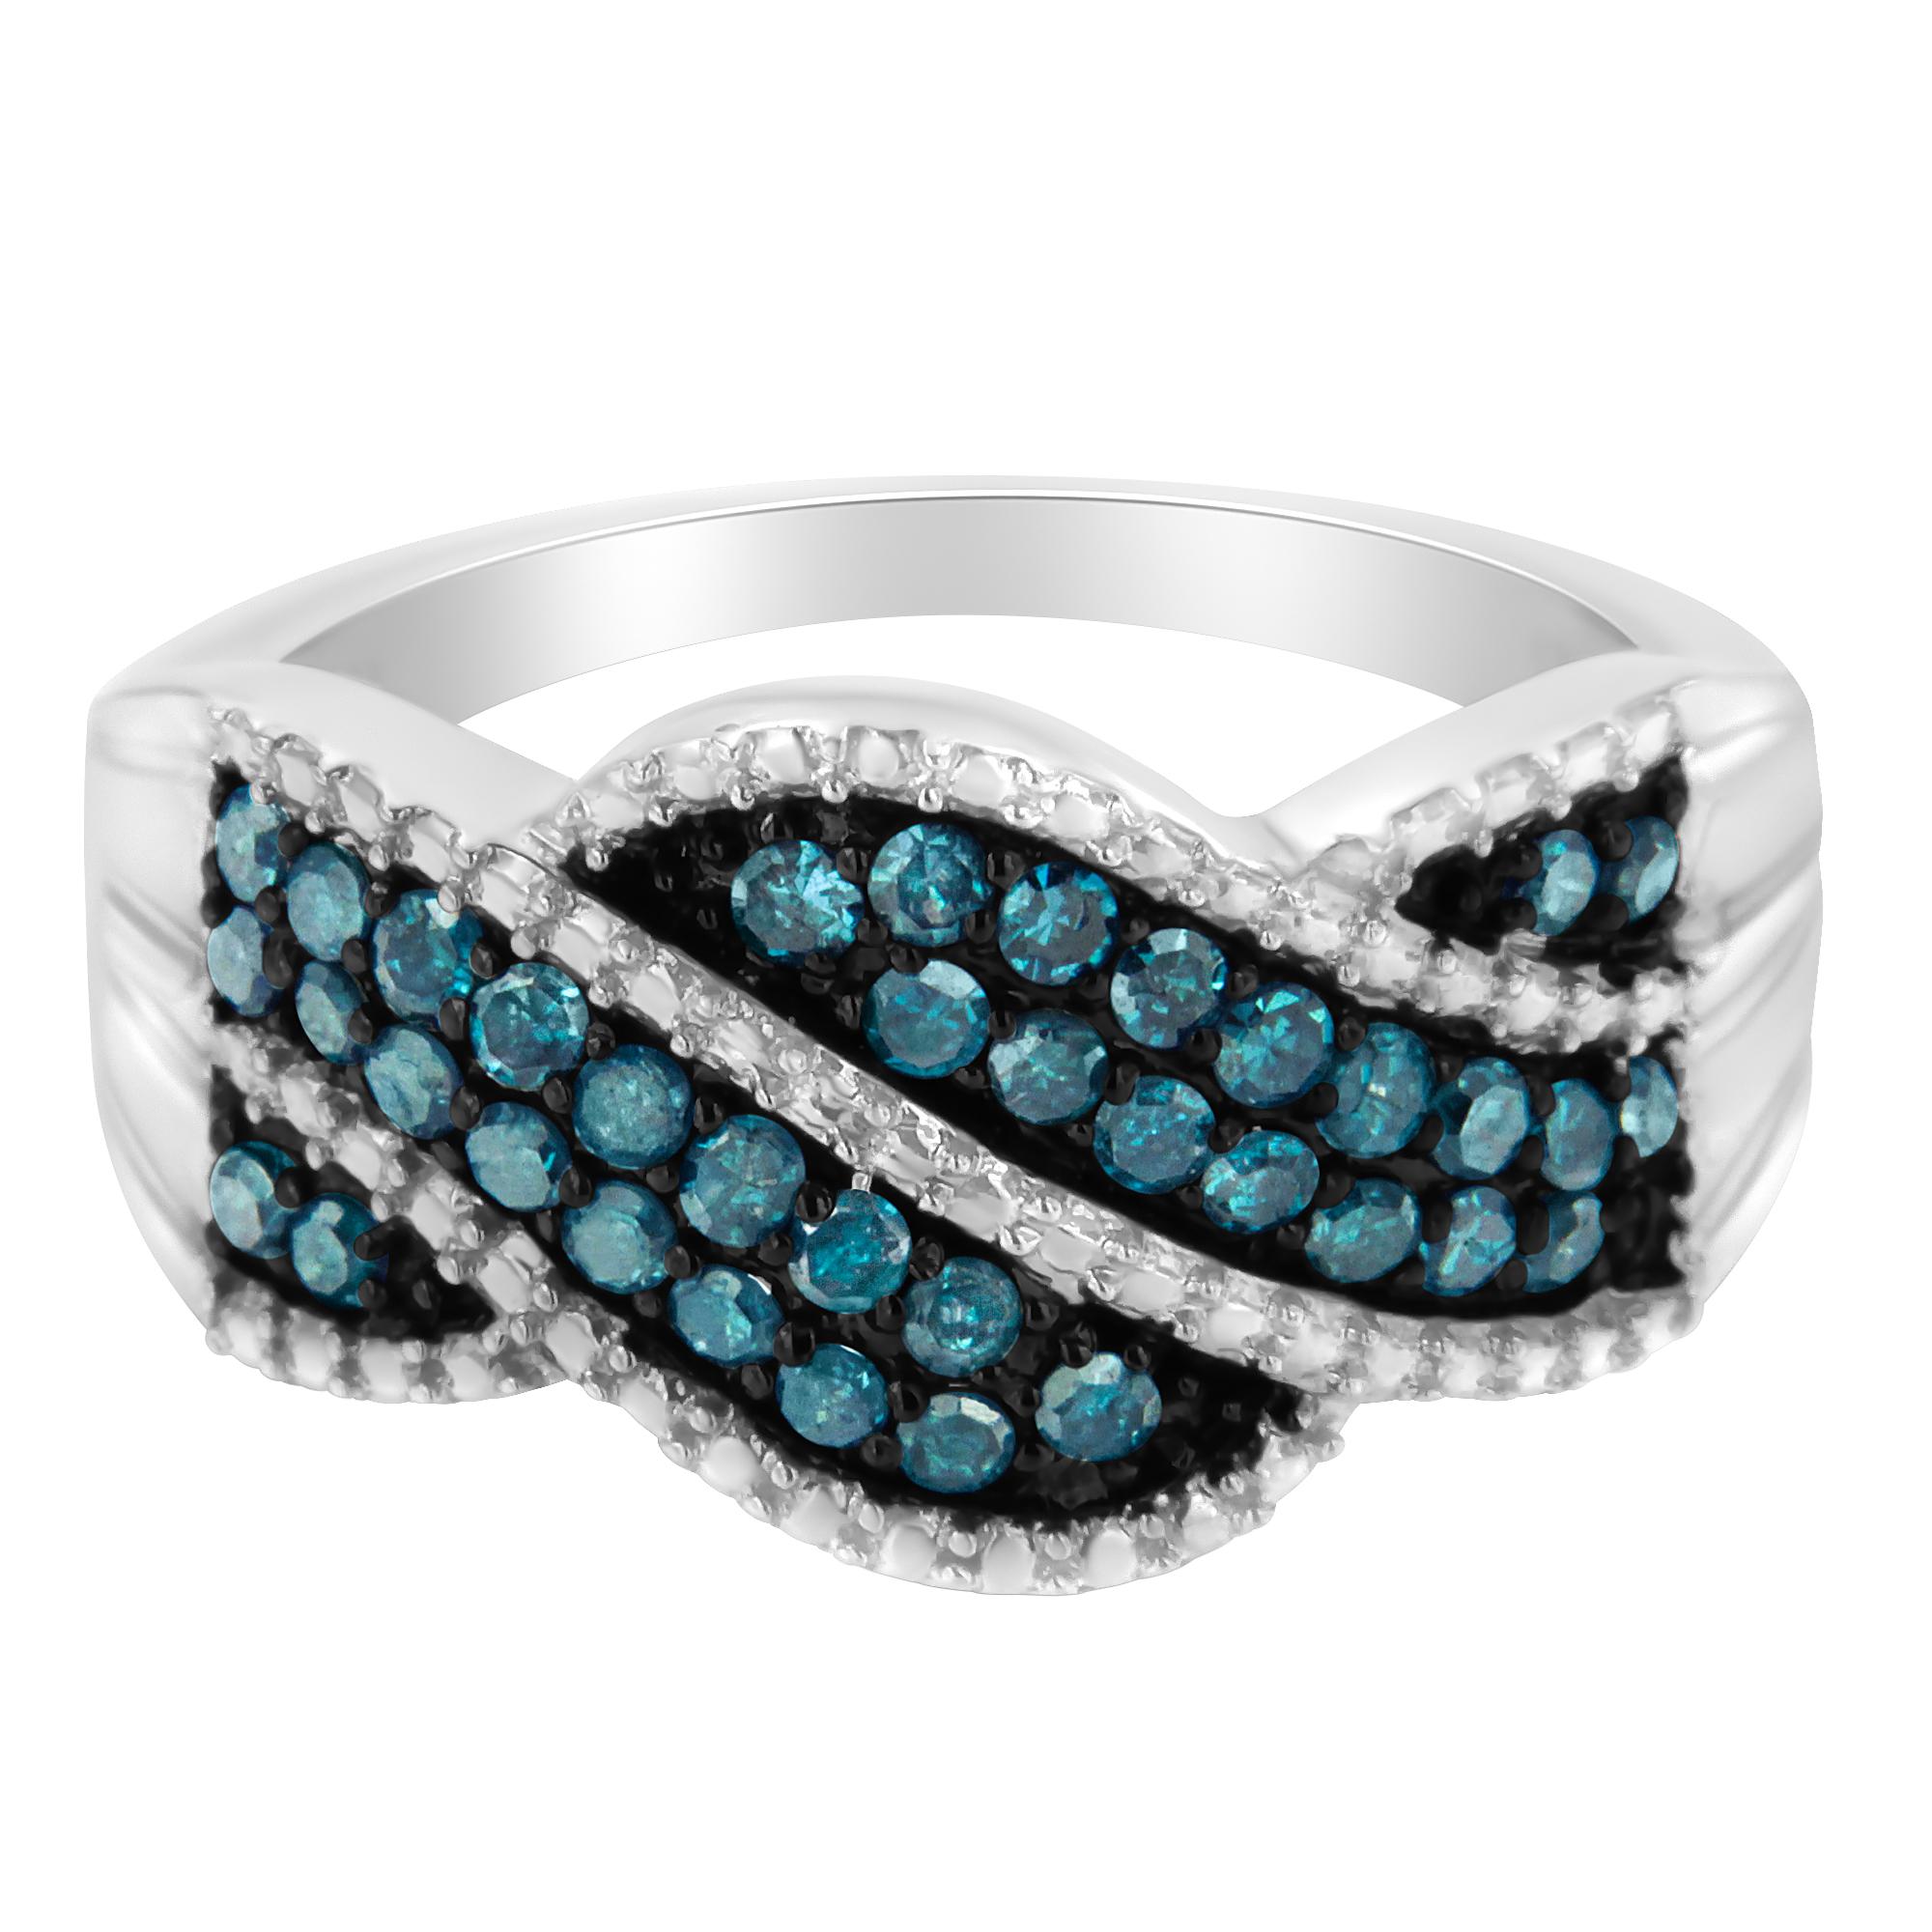 Verknüpfen Sie Ihren gesamten Look mit diesem auffälligen Set! Dieses Set aus Anhänger, Halskette, Ohrringen und Ring ist aus kühlem Sterlingsilber gefertigt und verfügt über auffällige, behandelte blaue Diamanten, die für zusätzlichen Glanz sorgen.